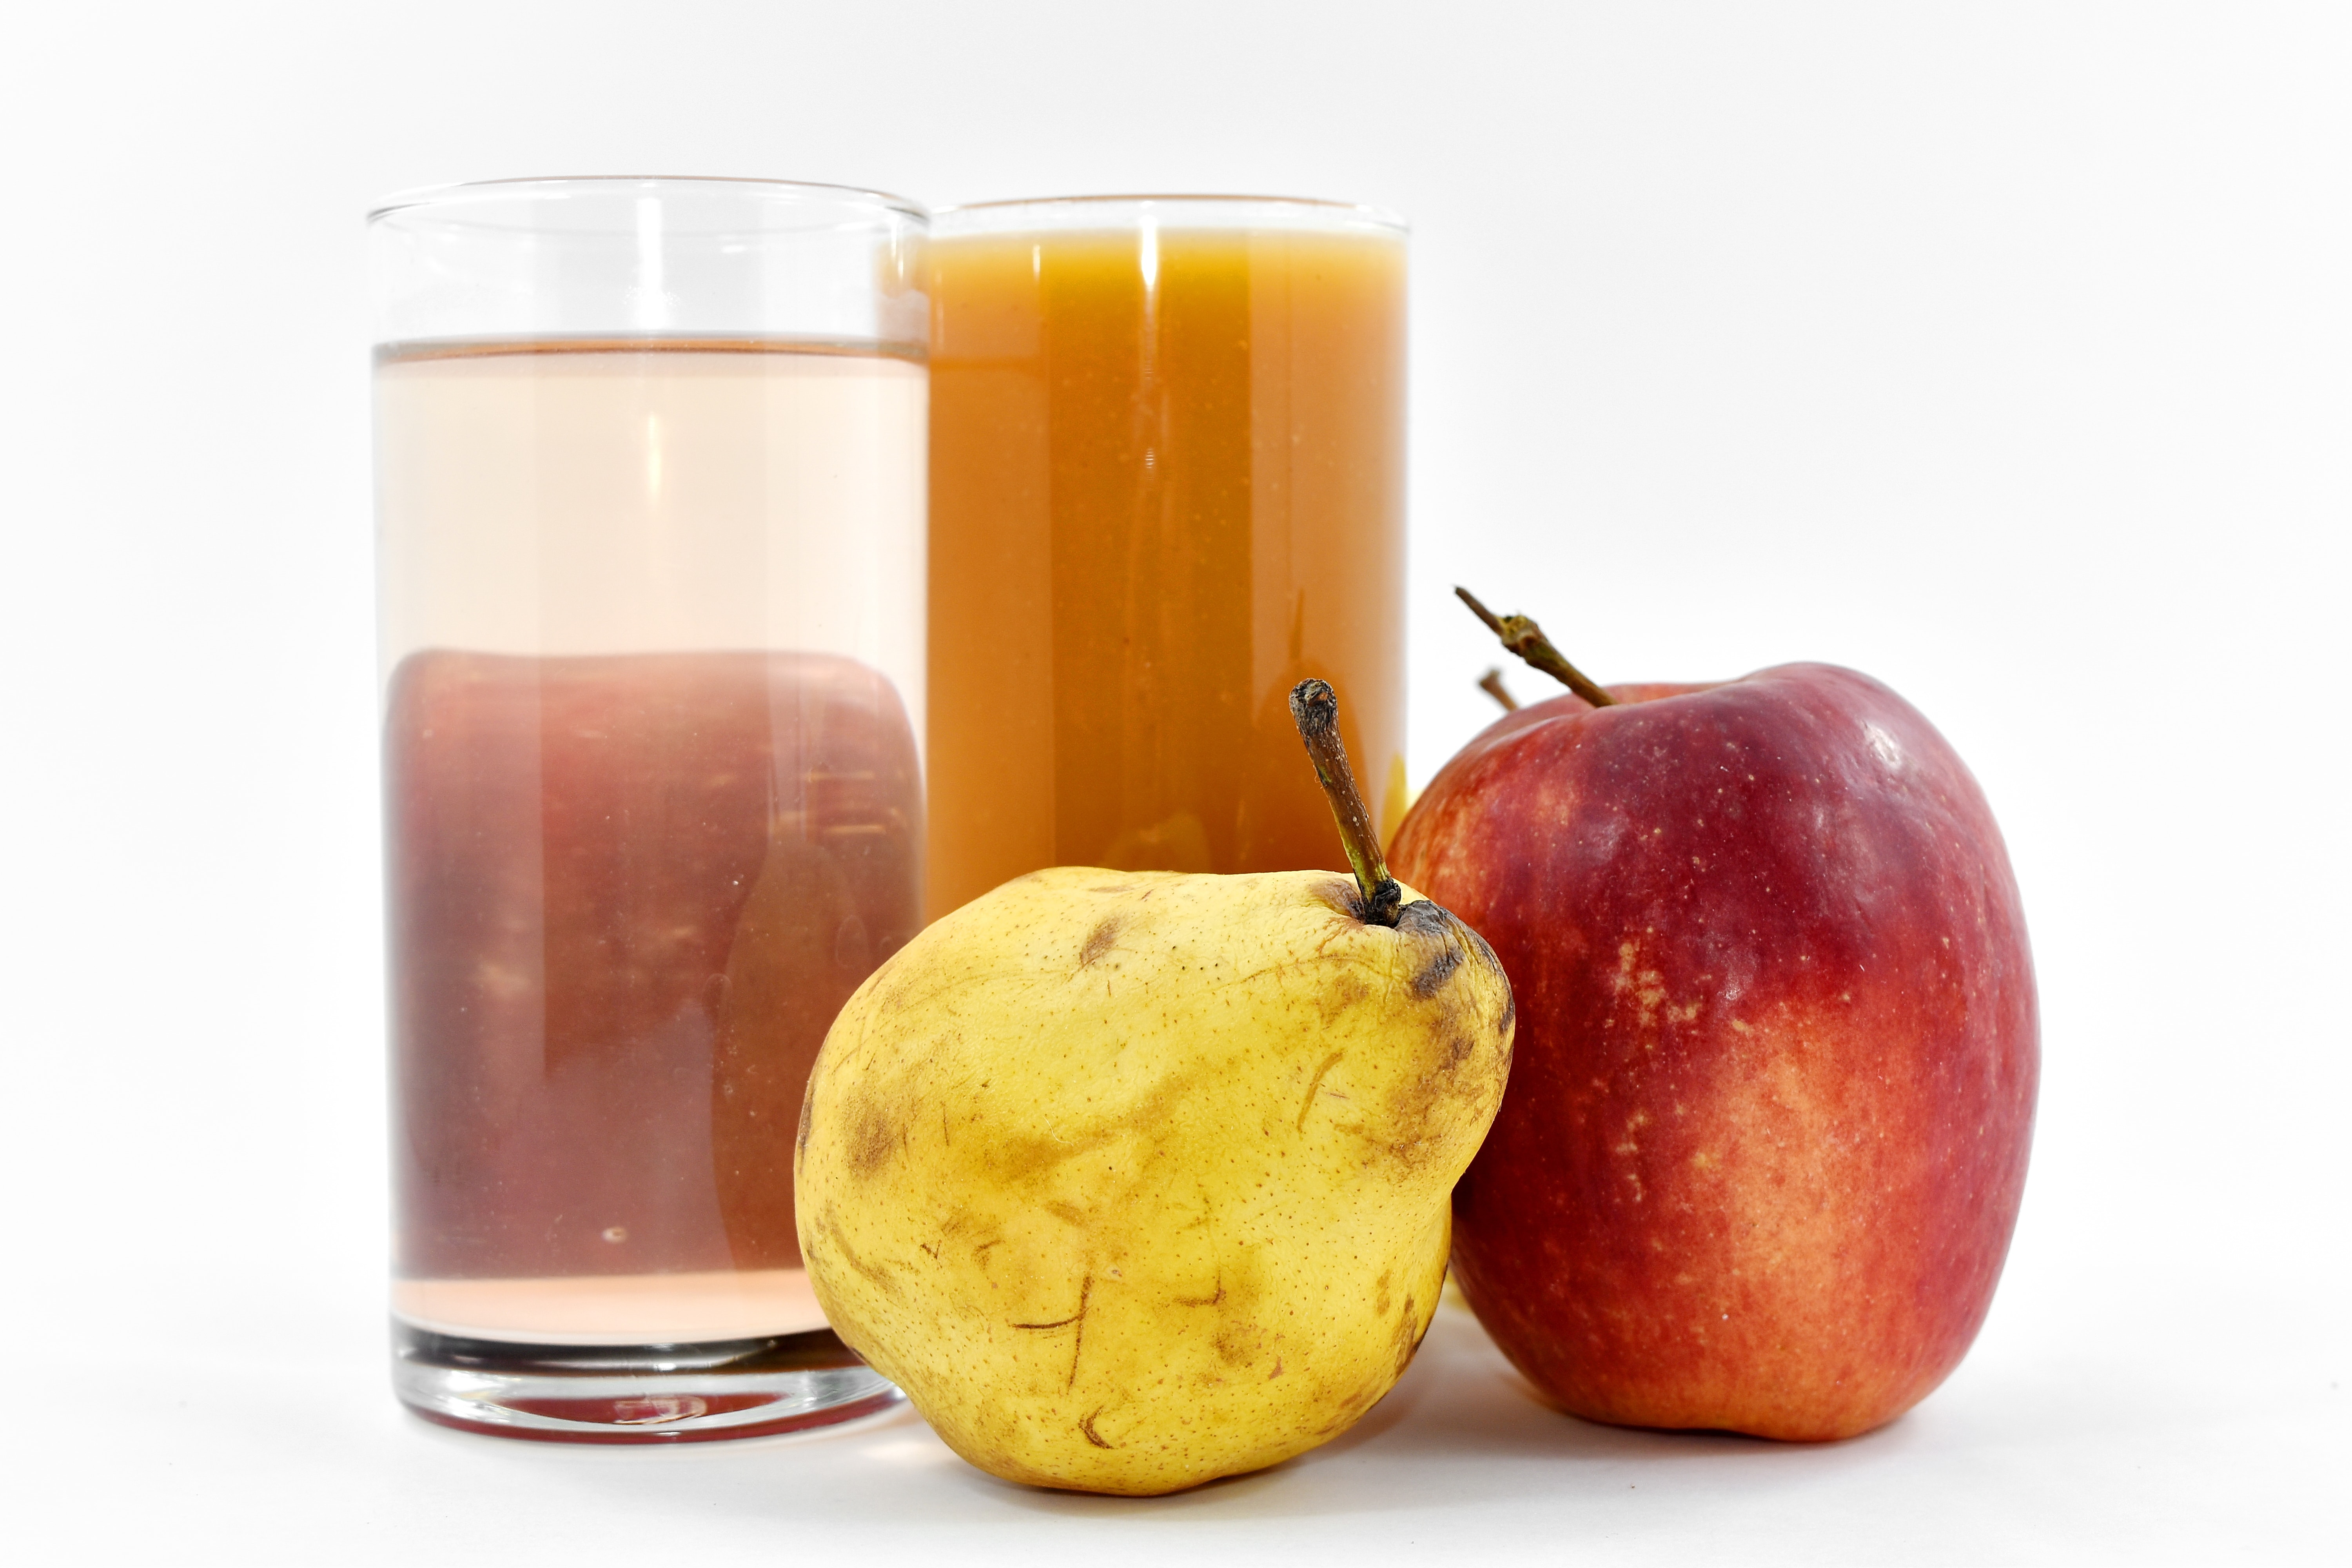 Kostenlose Bild: Apfel, frisch, Obst, Fruchtsaft, Birne, Sirup, gesund ...